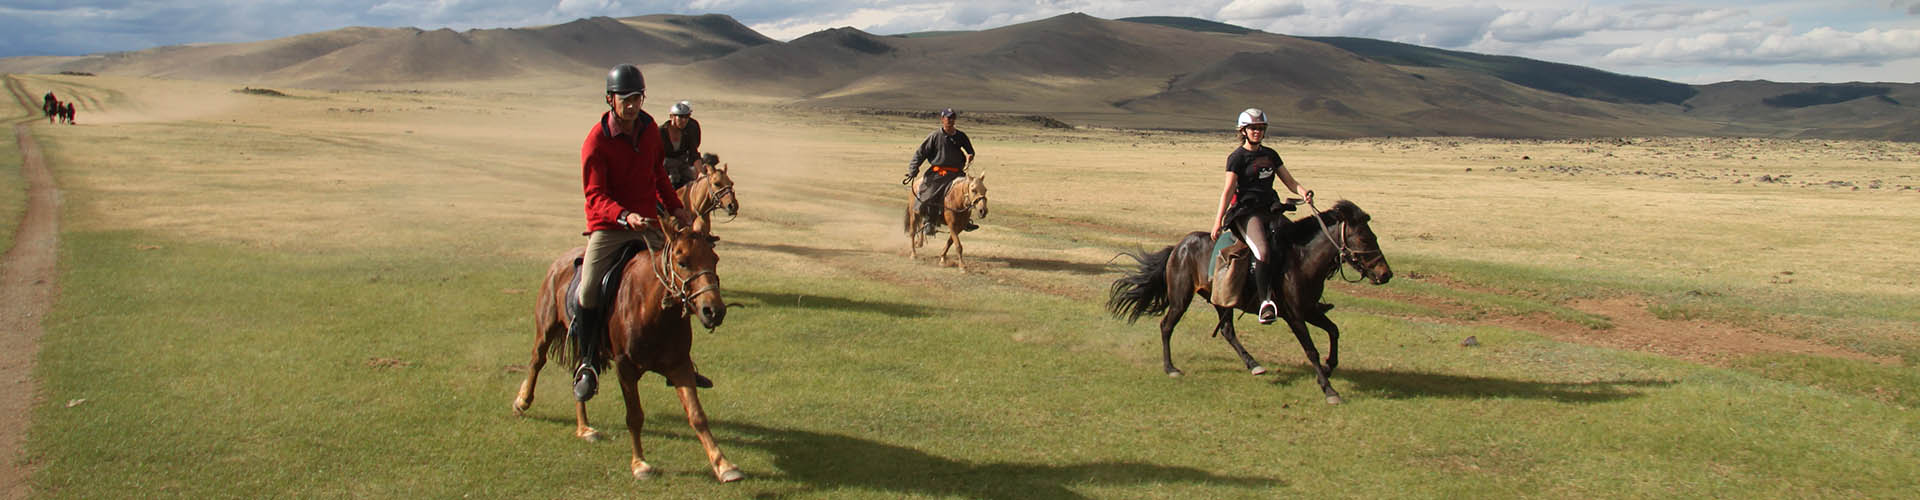 Rando Cheval Mongolie - Voyage, trek et randonnée équestre